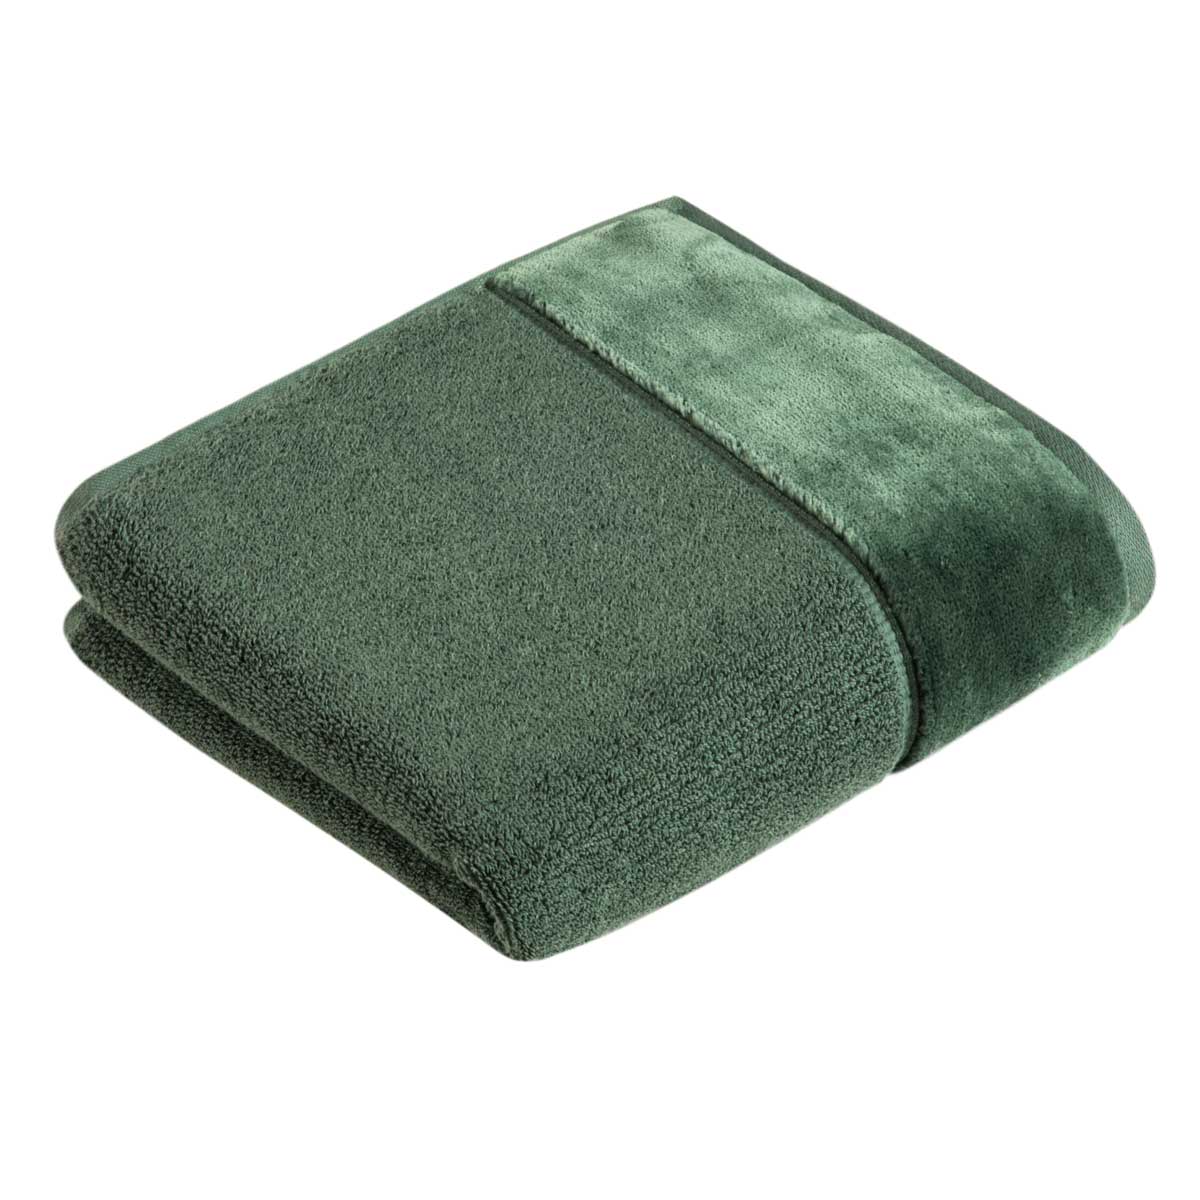 Полотенце махровое Vossen Pure 30x30см, цвет серо-зеленый жен костюм спортивный арт 16 0883 серо зеленый р 52